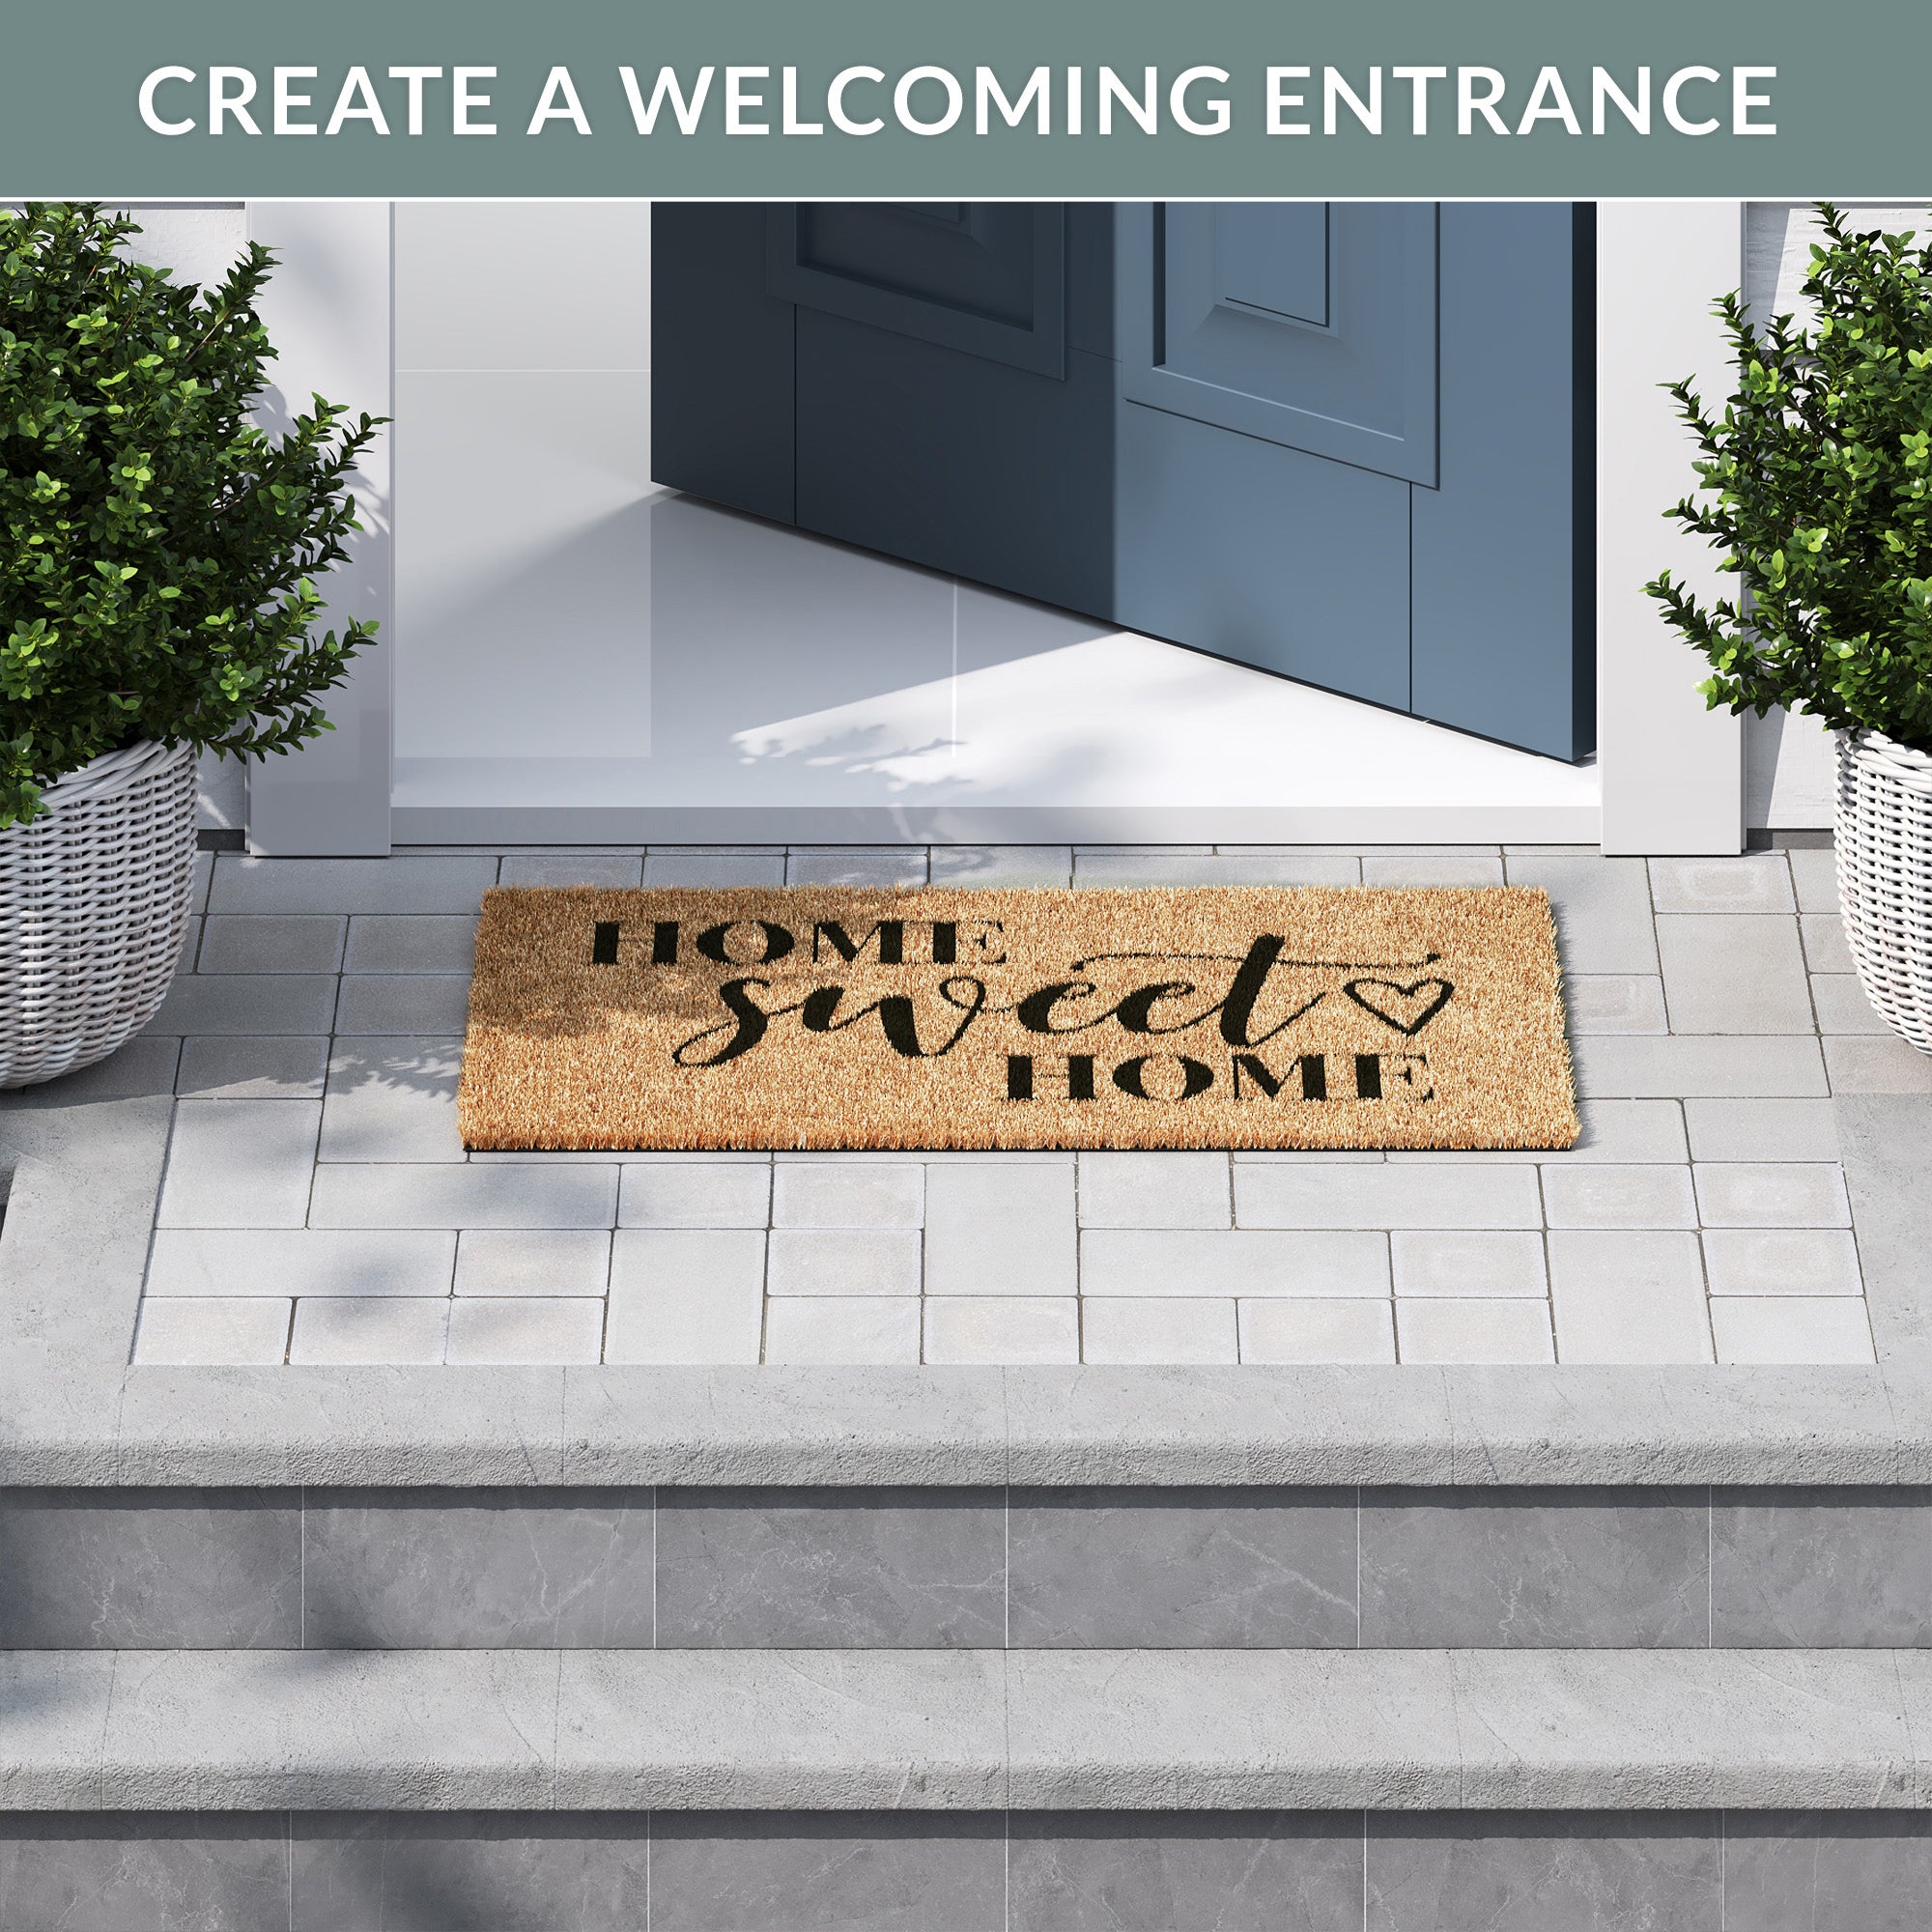 Barnyard Designs 'Home Sweet Home' Doormat Welcome Mat for Outdoors, Large  Front Door Entrance Mat, 30x17, Brown